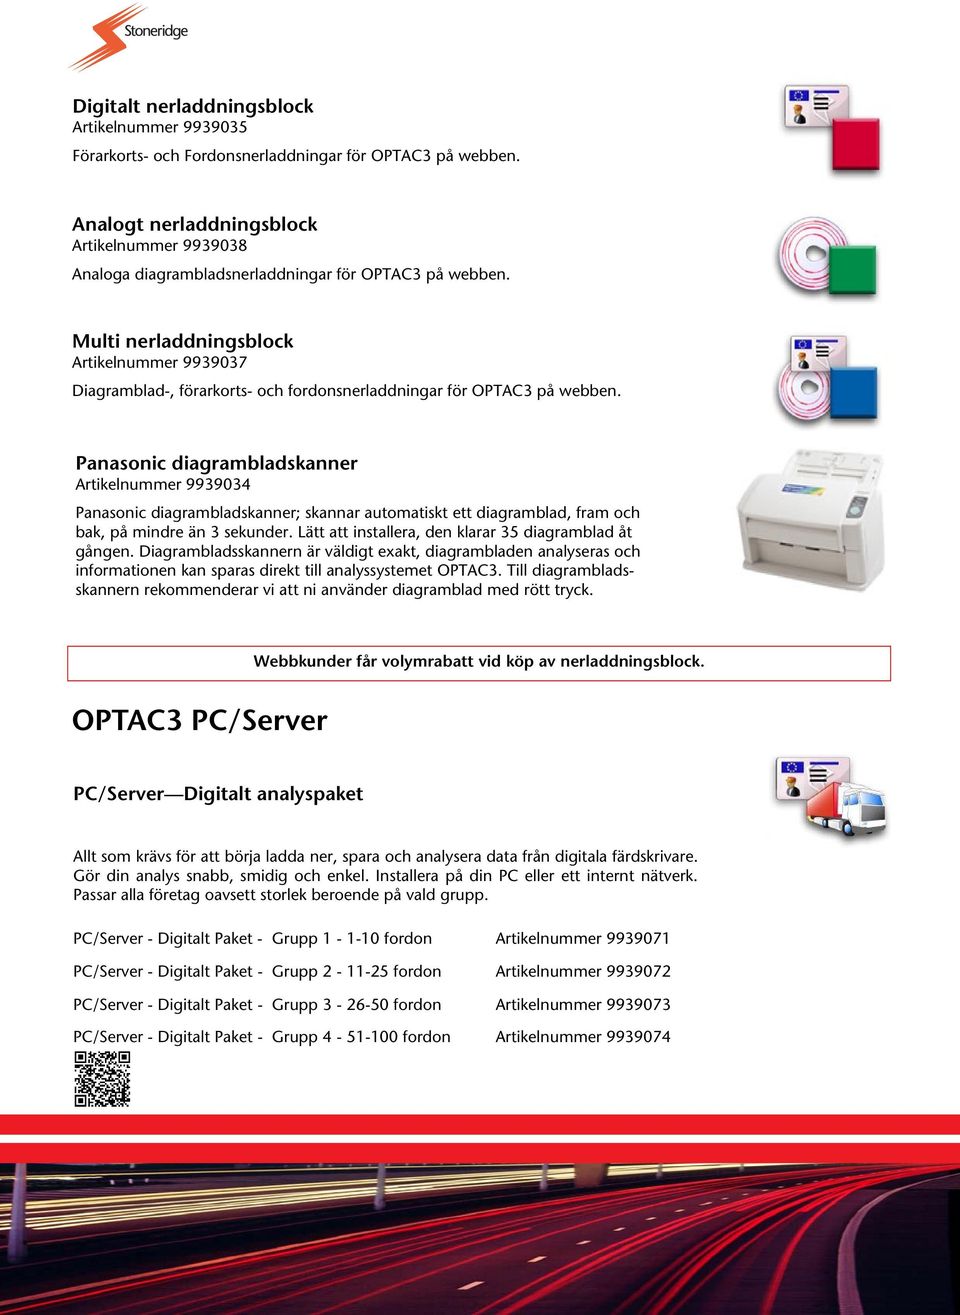 Multi nerladdningsblock Artikelnummer 9939037 Diagramblad-, förarkorts- och fordonsnerladdningar för OPTAC3 på webben.